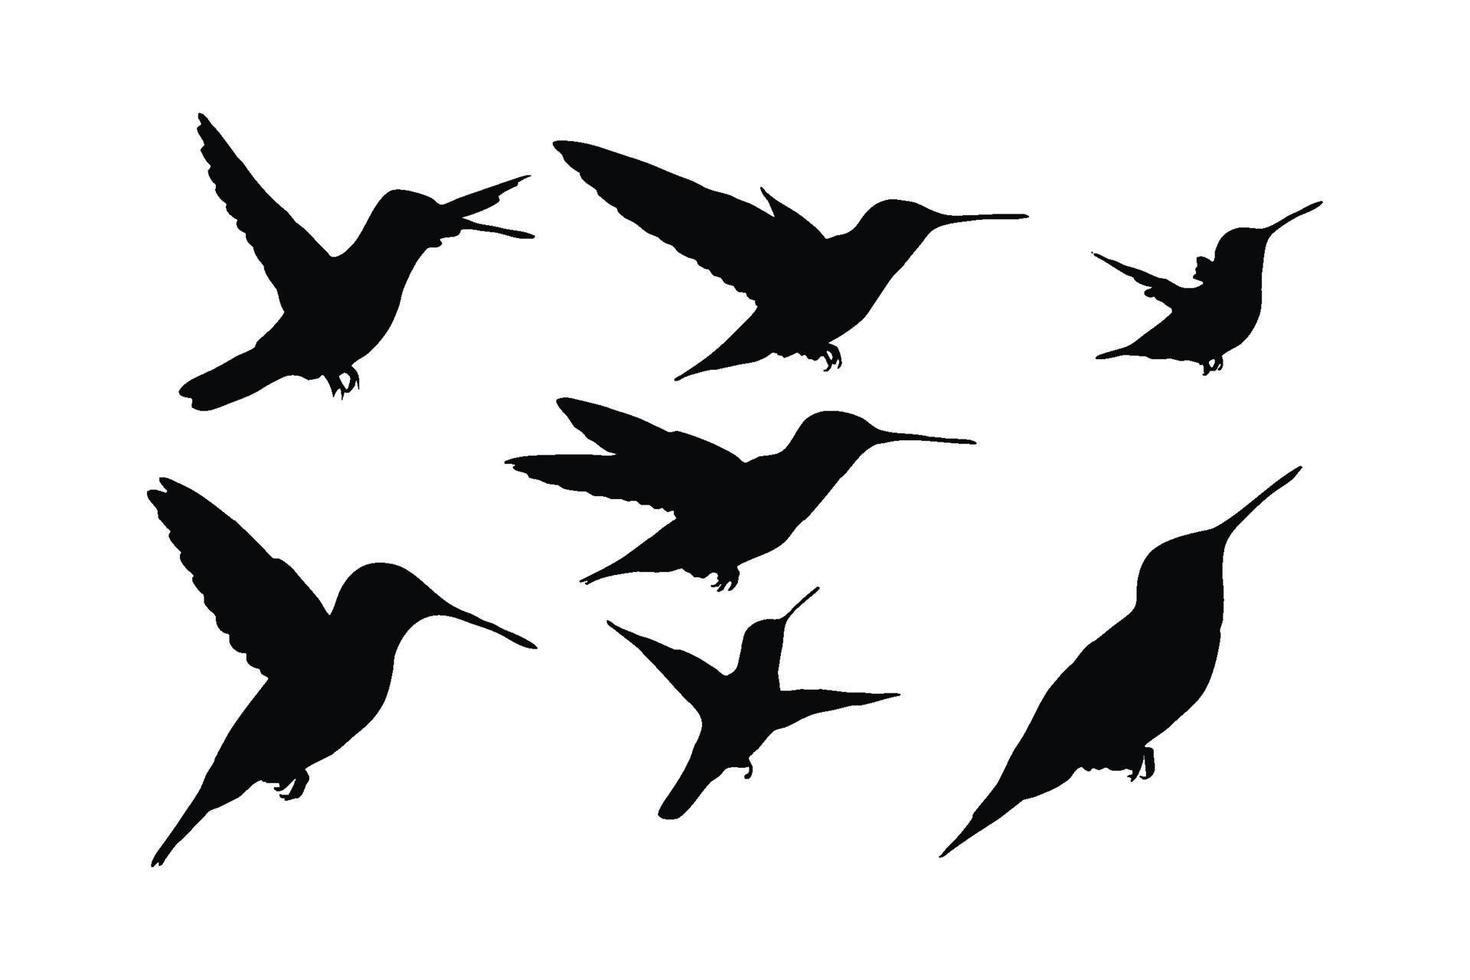 kolibrie vliegend silhouet reeks Aan een wit achtergrond. kolibries in verschillend standen vliegend en zittend silhouet verzameling. dieren in het wild vogel pictogrammen silhouet bundel ontwerp. vector